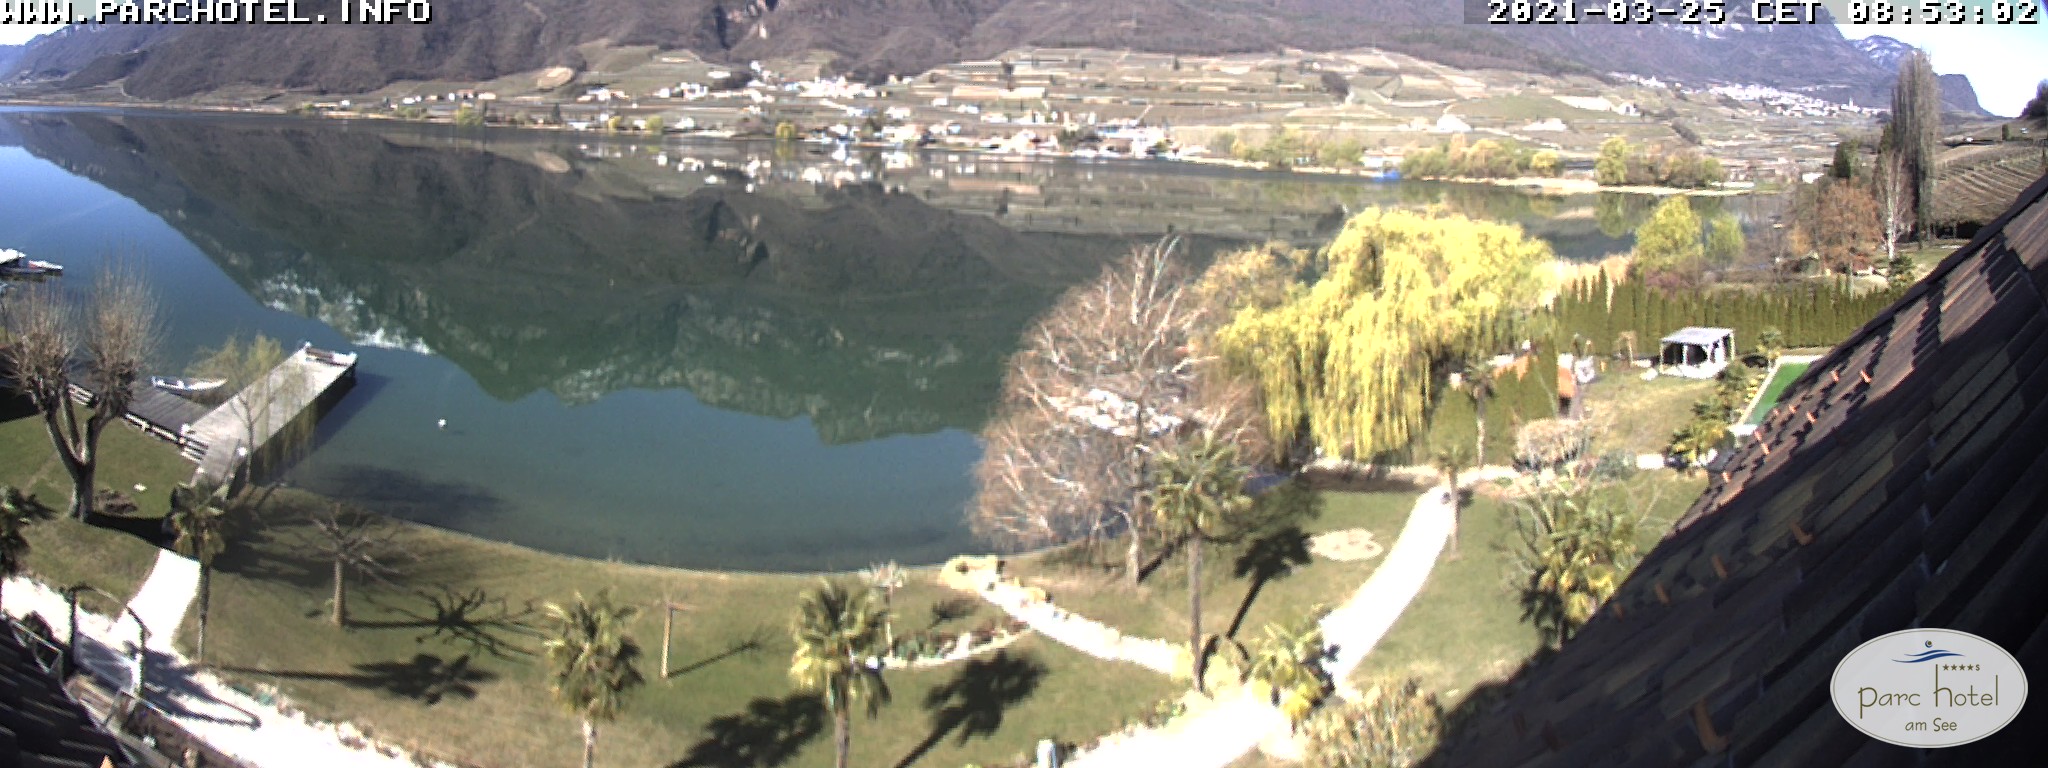 Webcam am Kalterer See am Parc Hotel, am Nordufer mit Aussicht auf den Kalterer See Blickrichtung Südwesten